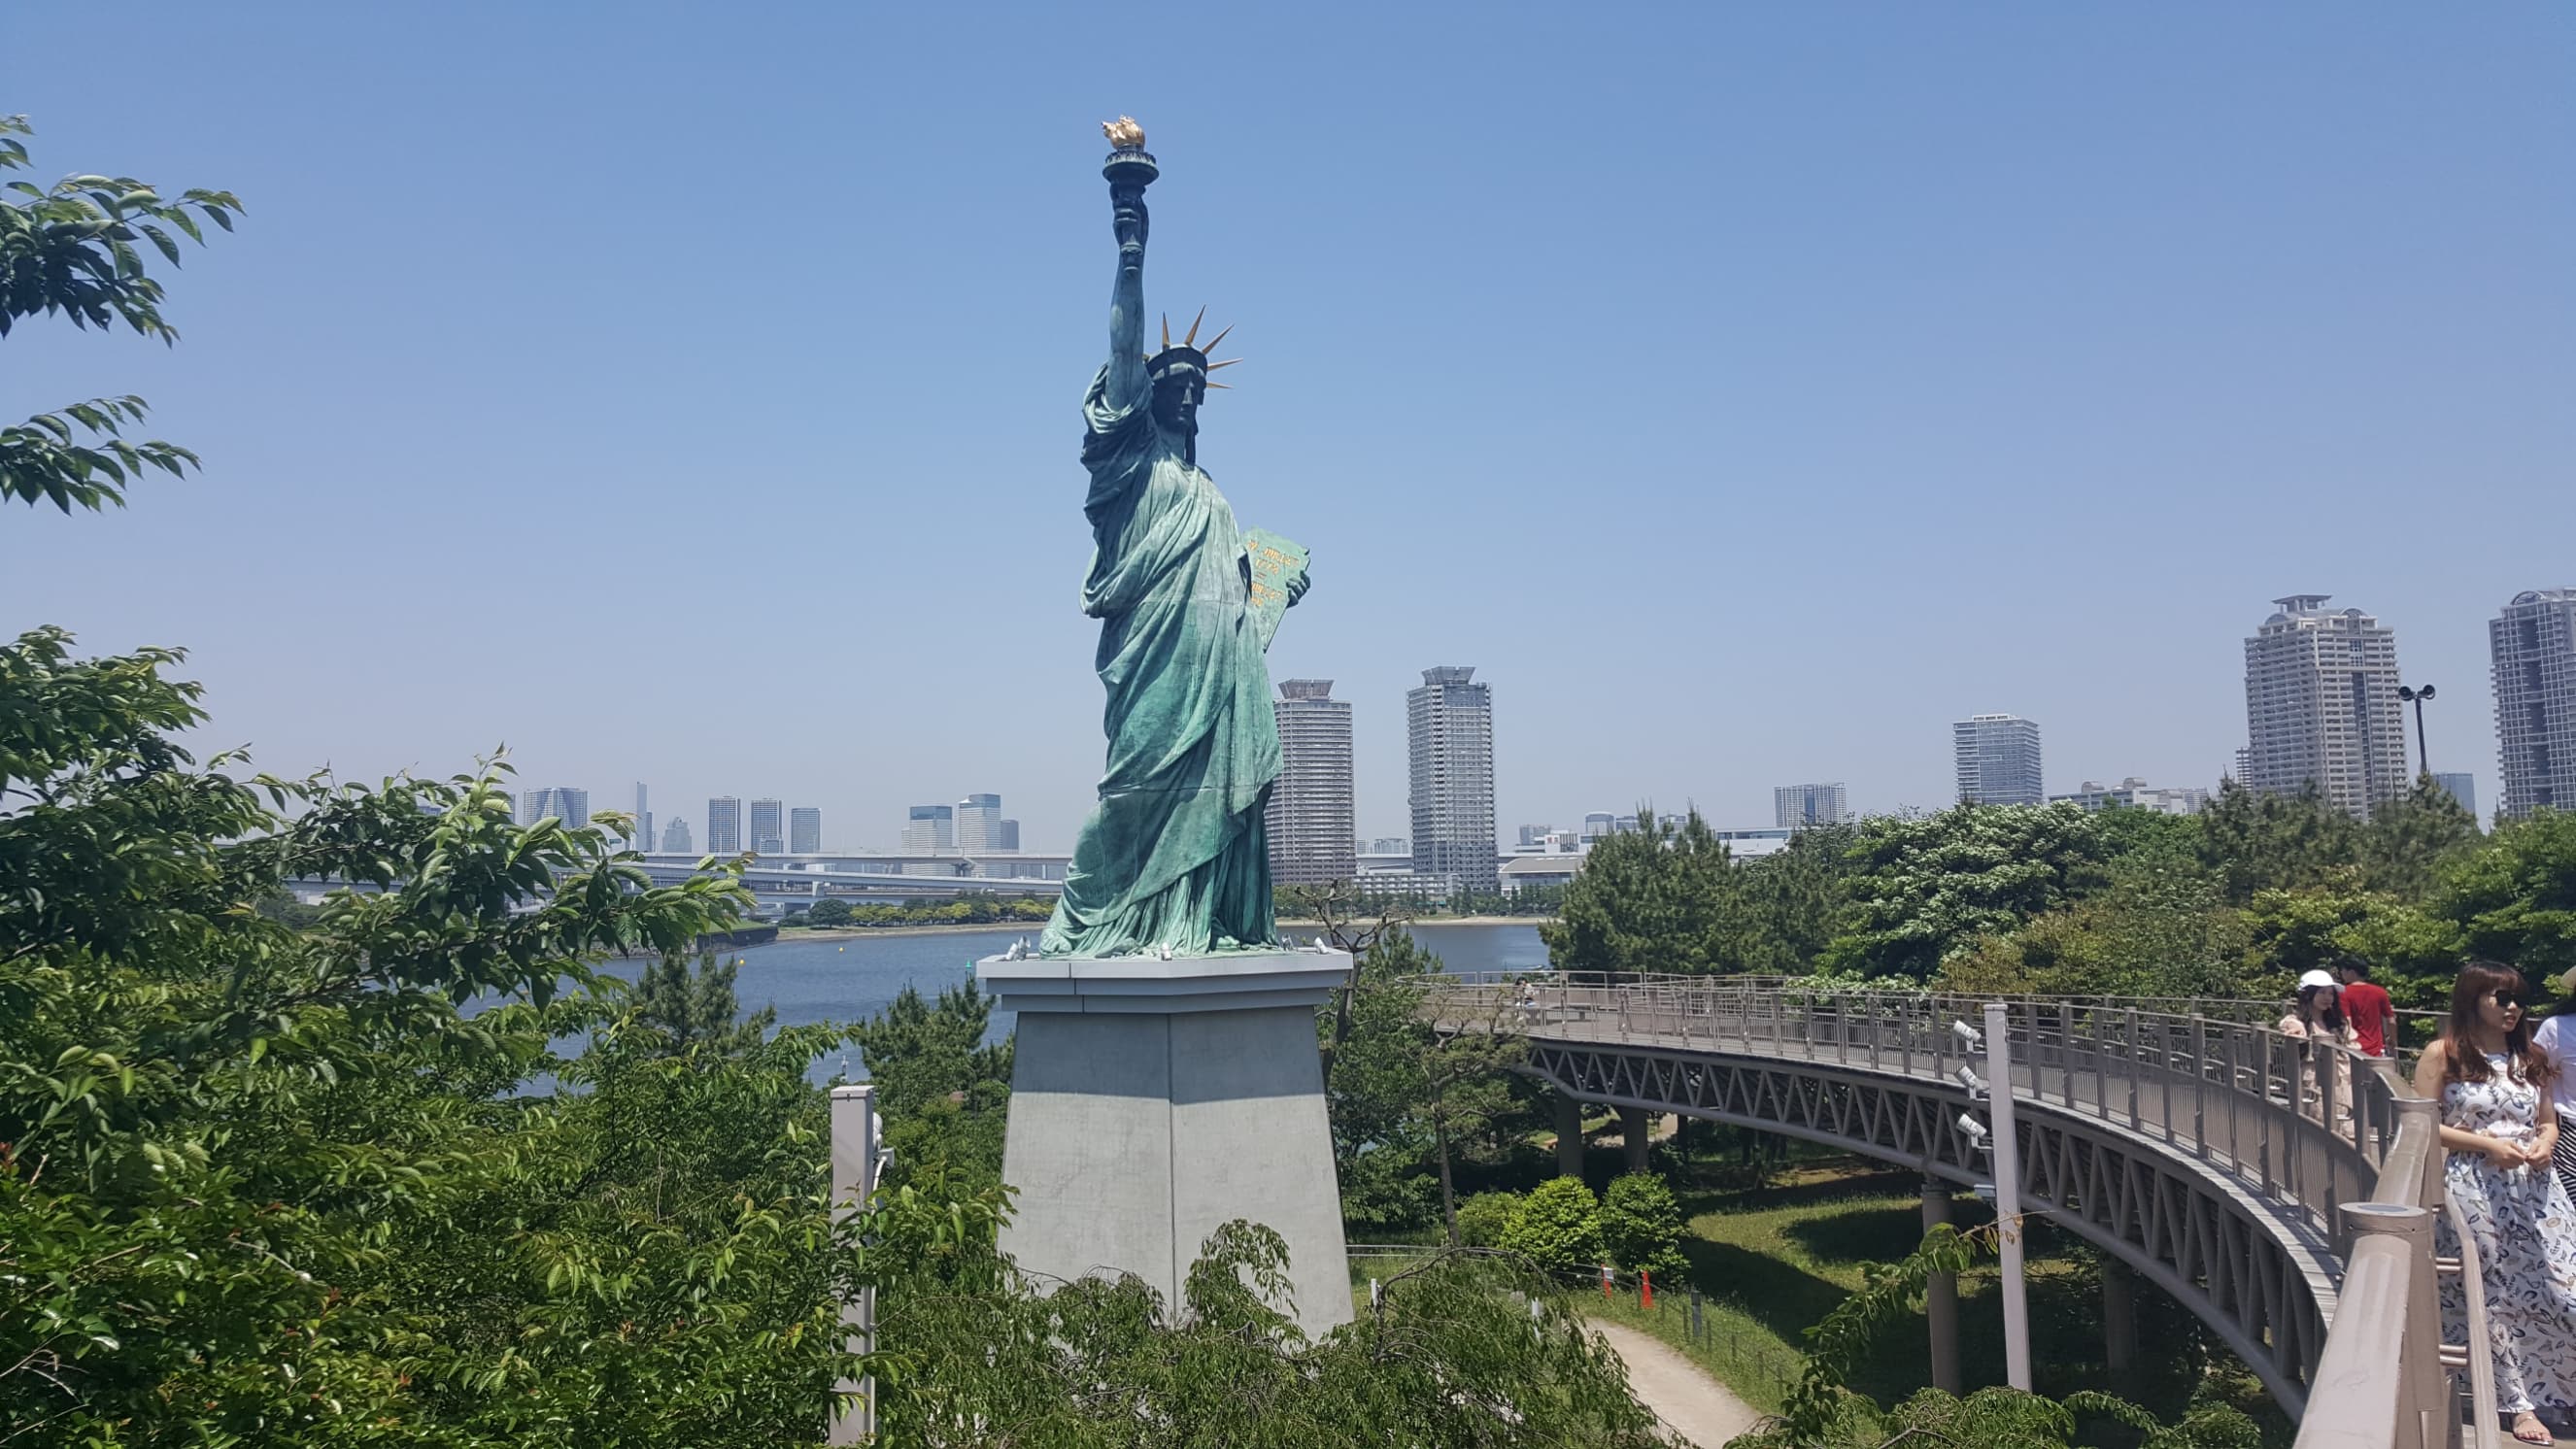 Copia statua della Libertà a Odaiba (Tokyo)